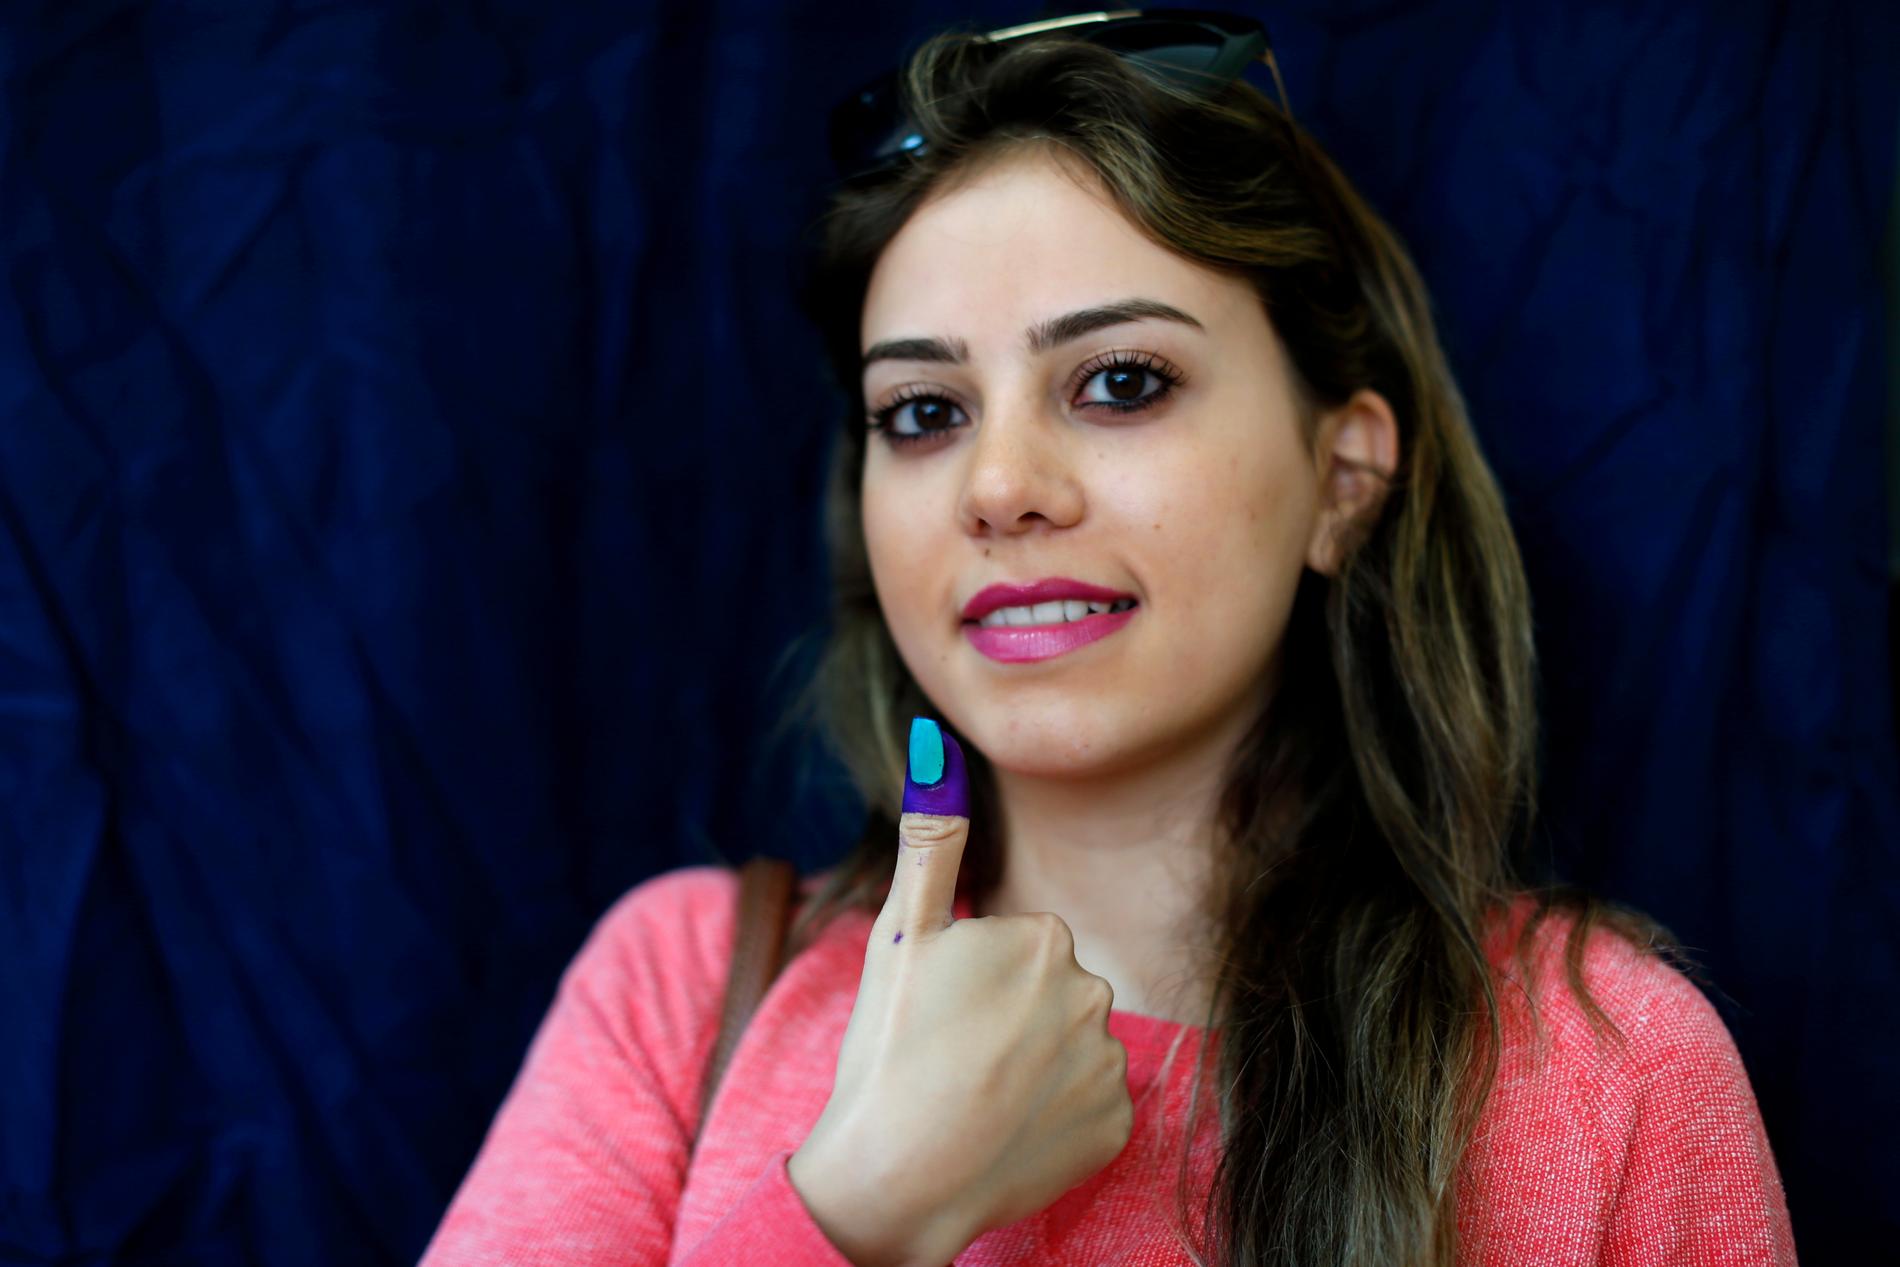 En libanesisk kvinna visar upp tummen med bläck som visar att hon röstat.